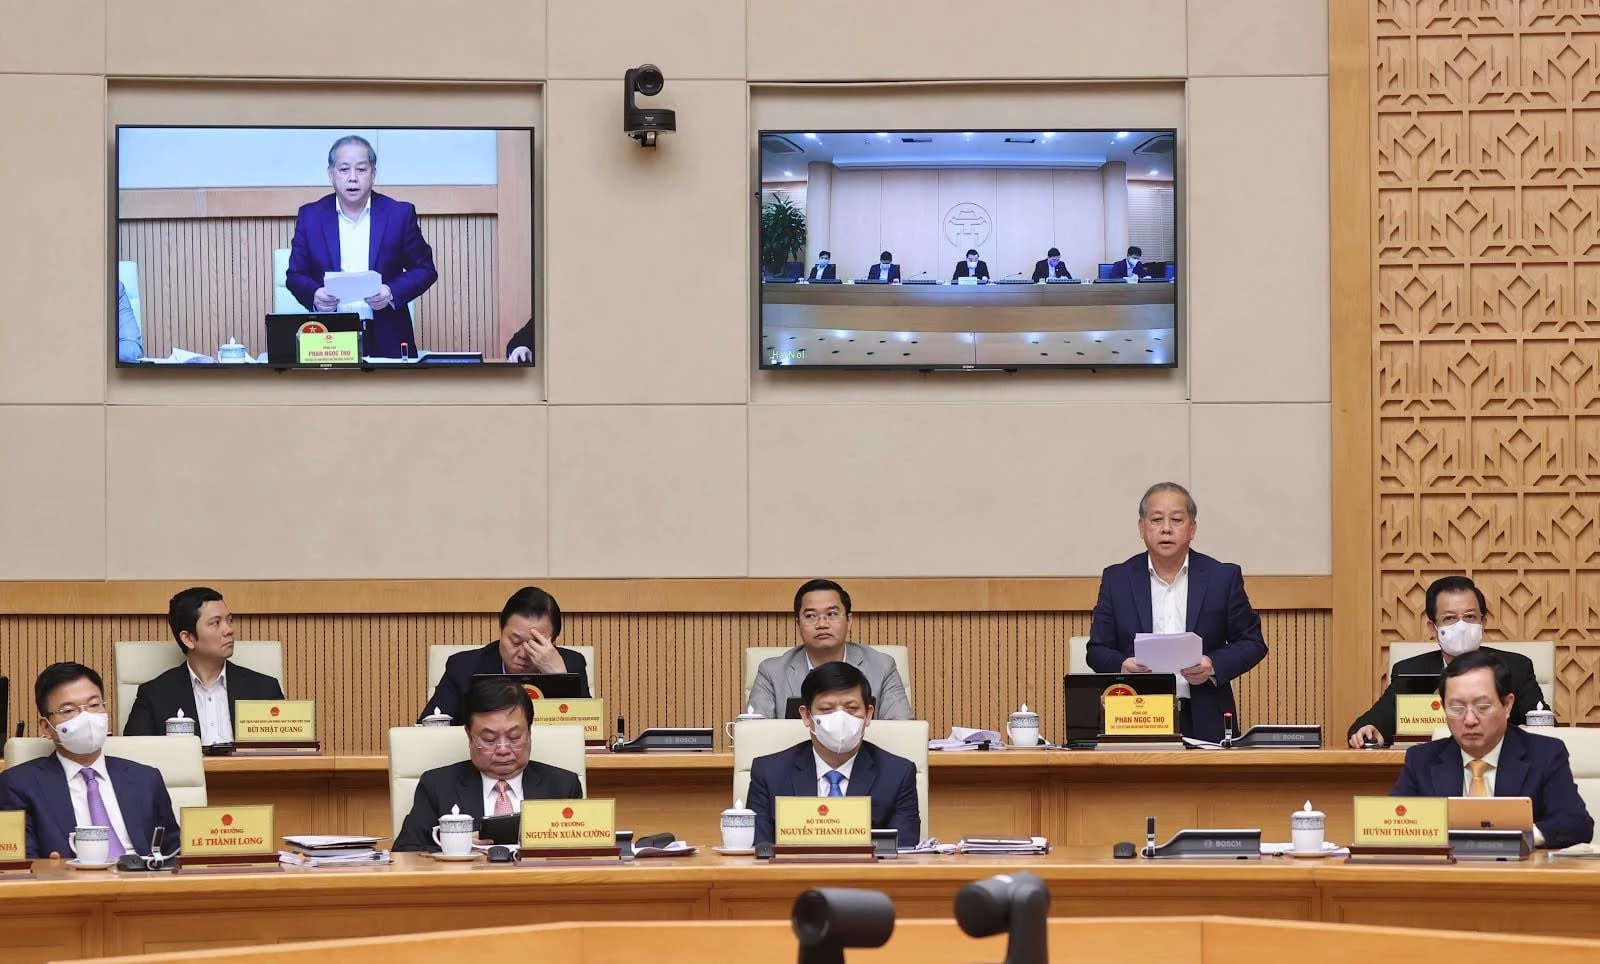 Chủ tịch UBND tỉnh Thừa Thiên Huế Phan Ngọc Thọ báo cáo Đề án Cơ chế chính sách đặc thù xây dựng Thừa Thiên Huế trở thành thành phố trực thuộc Trung ương, tại Phiên họp Chính phủ thường kỳ tháng 2/2021.